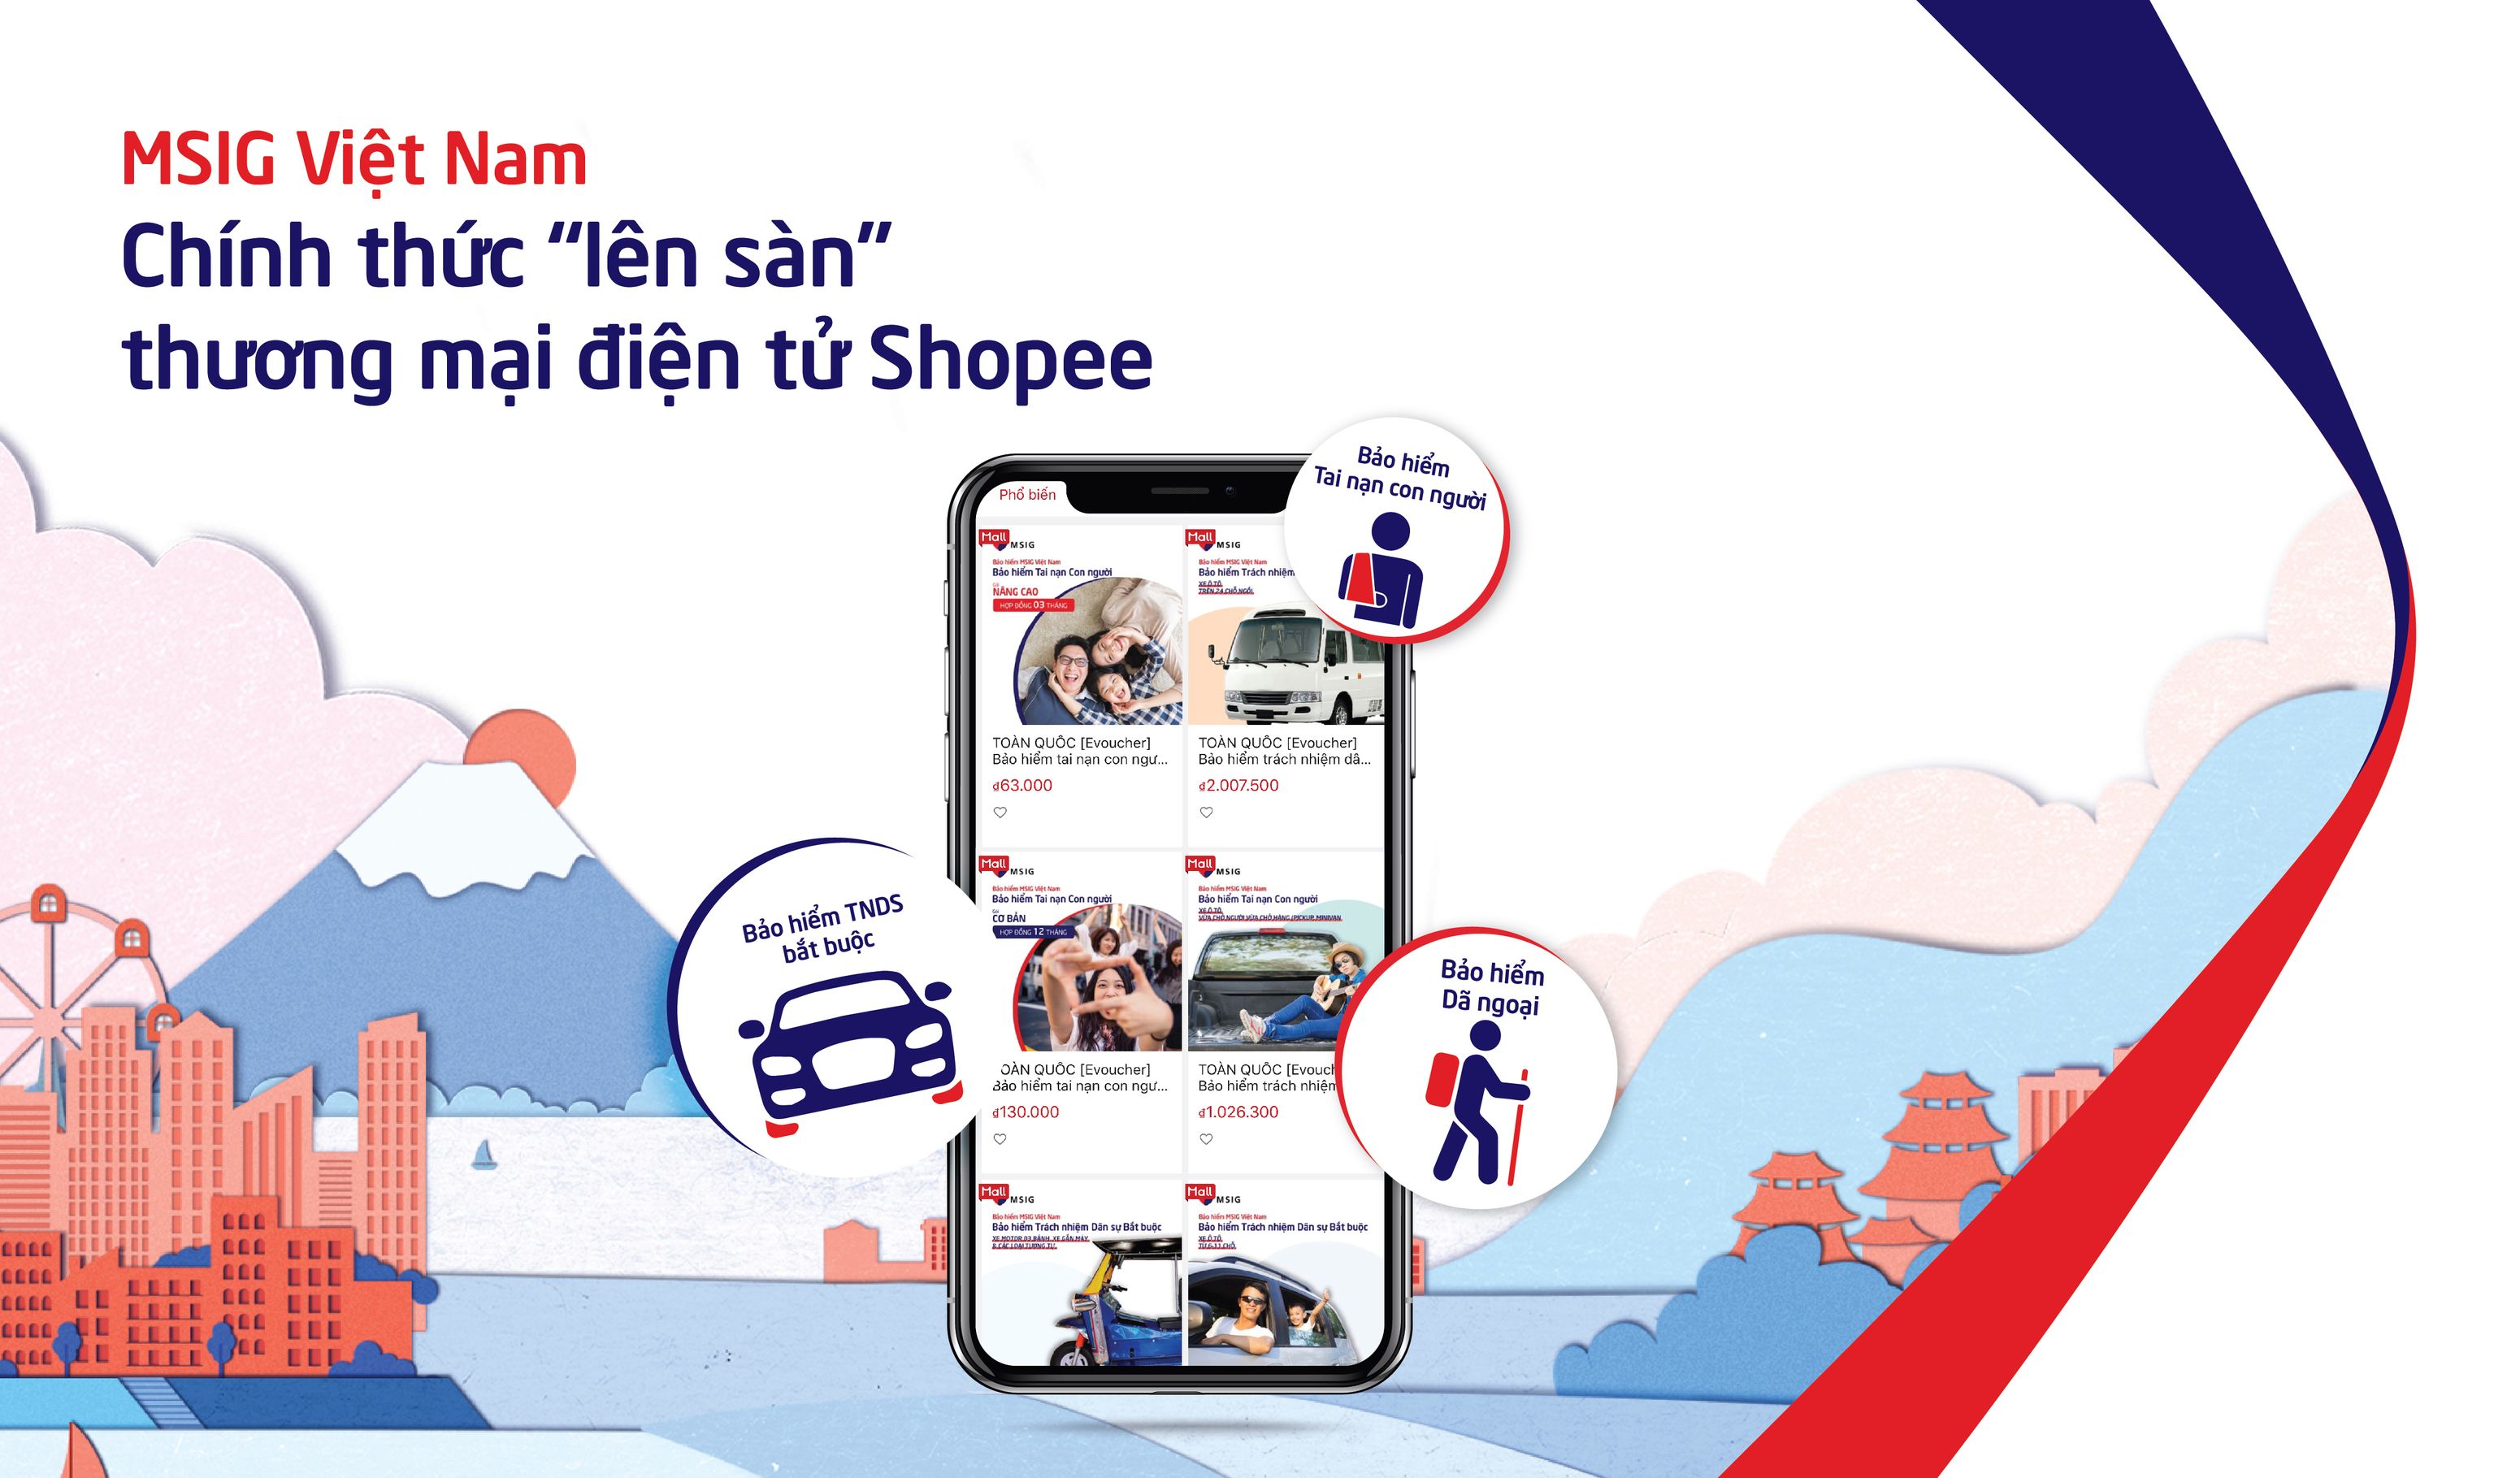 MSIG Việt Nam chính thức phân phối bảo hiểm qua Shopee